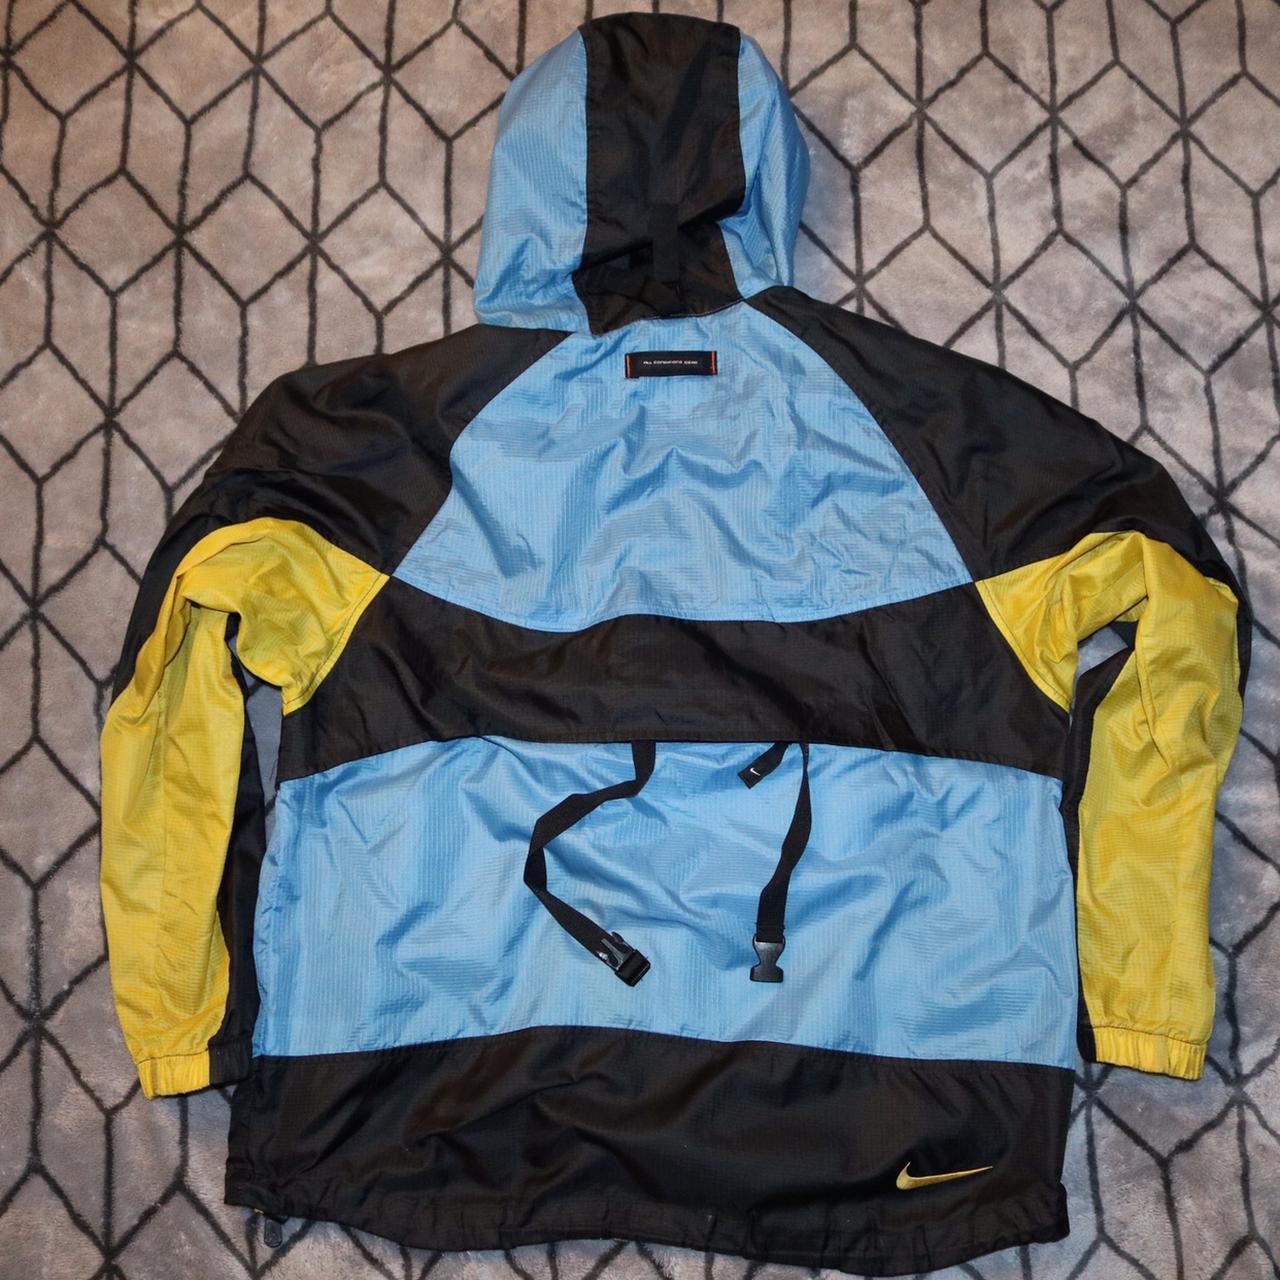 90's vintage Nike ACG lightweight packable jacket in... - Depop